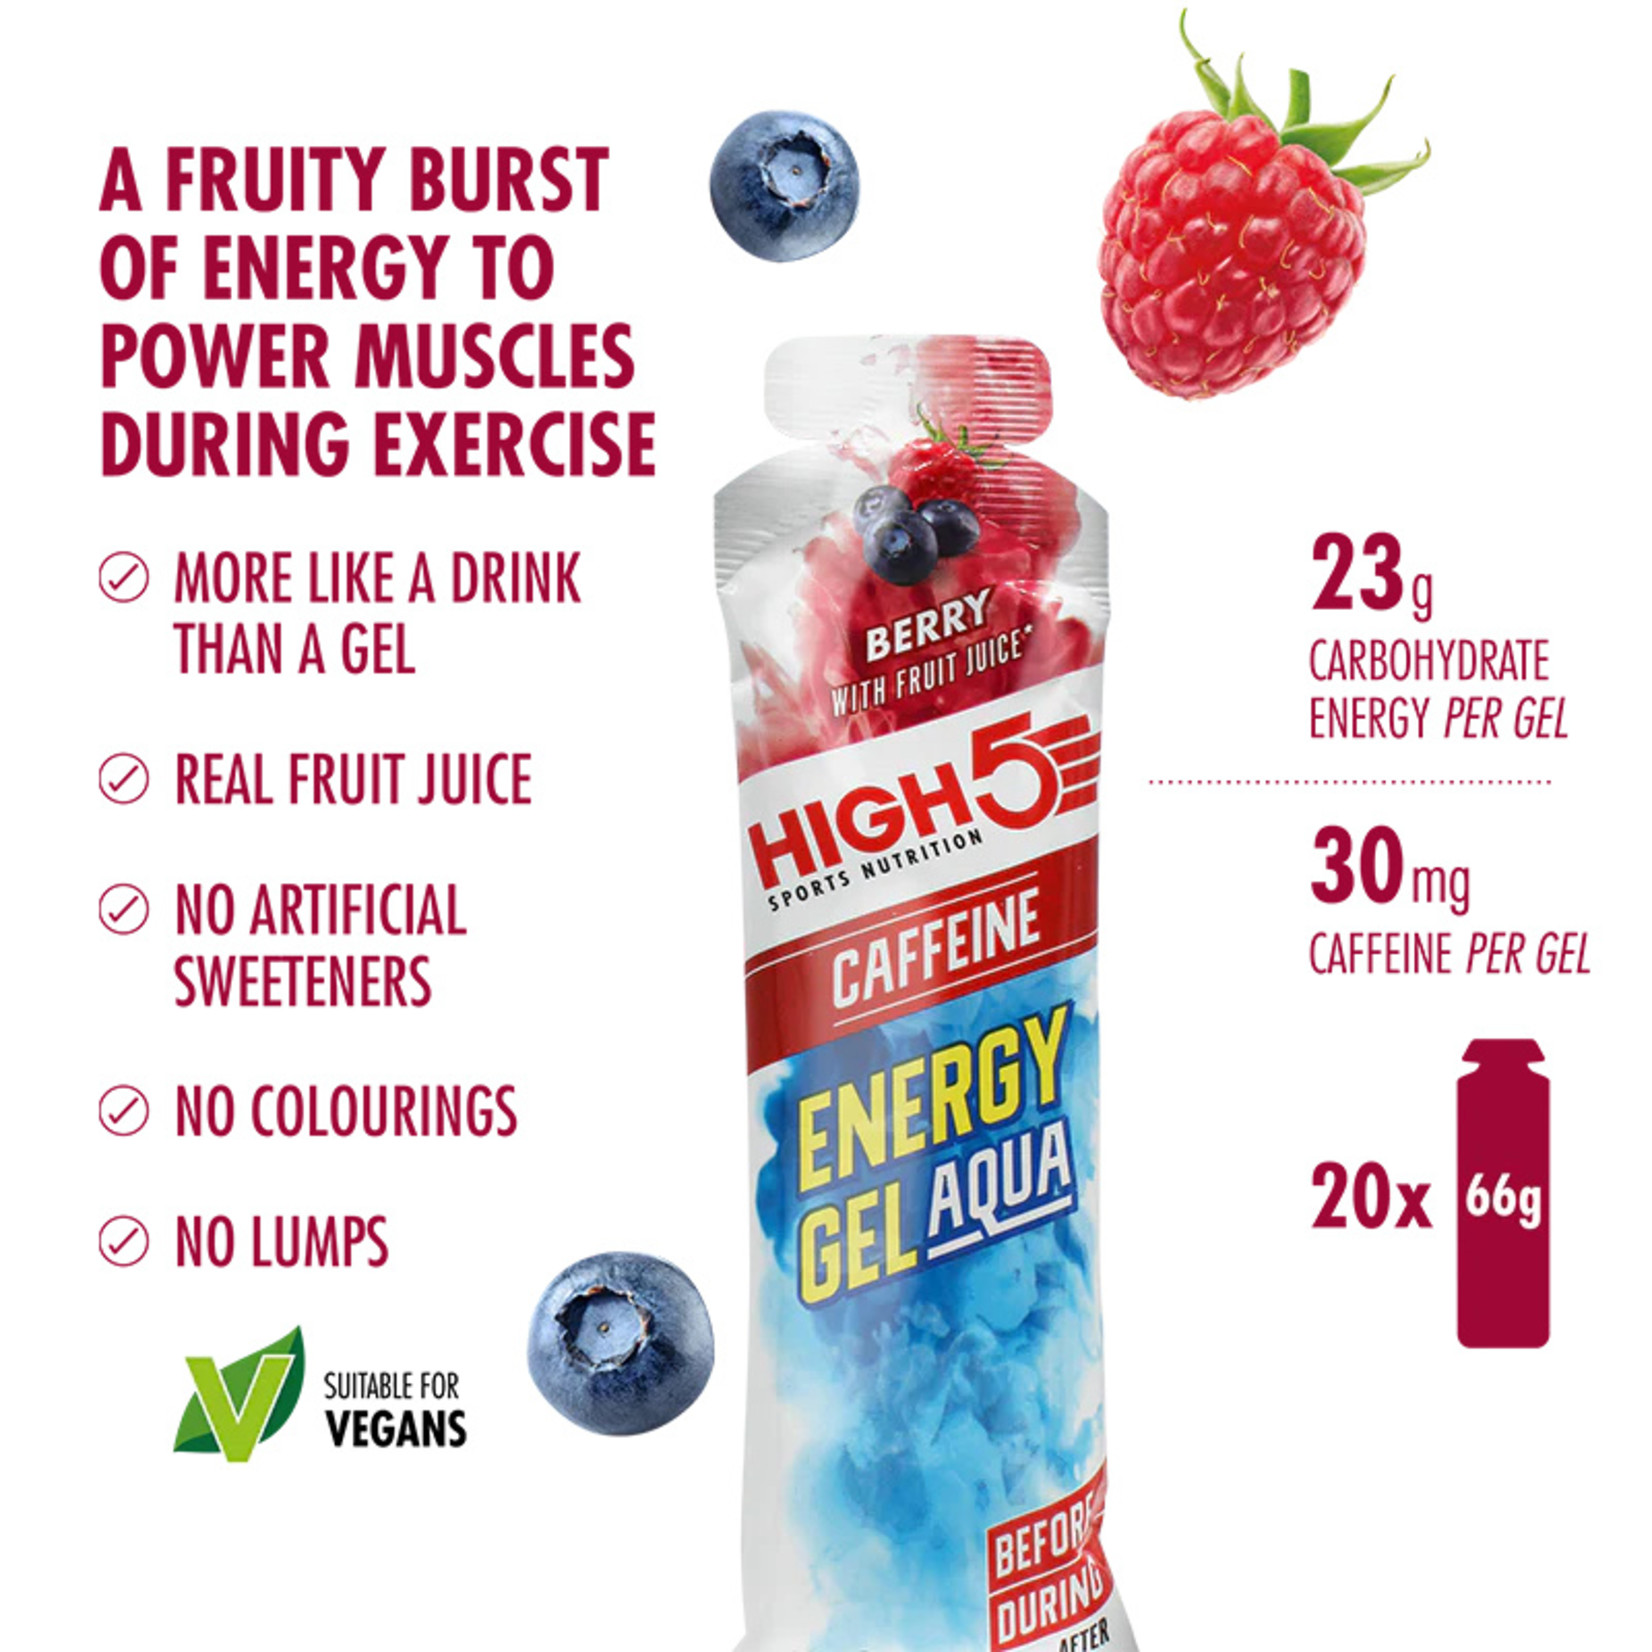 High 5 High5 Energy Gel Aqua Caffeine Berry